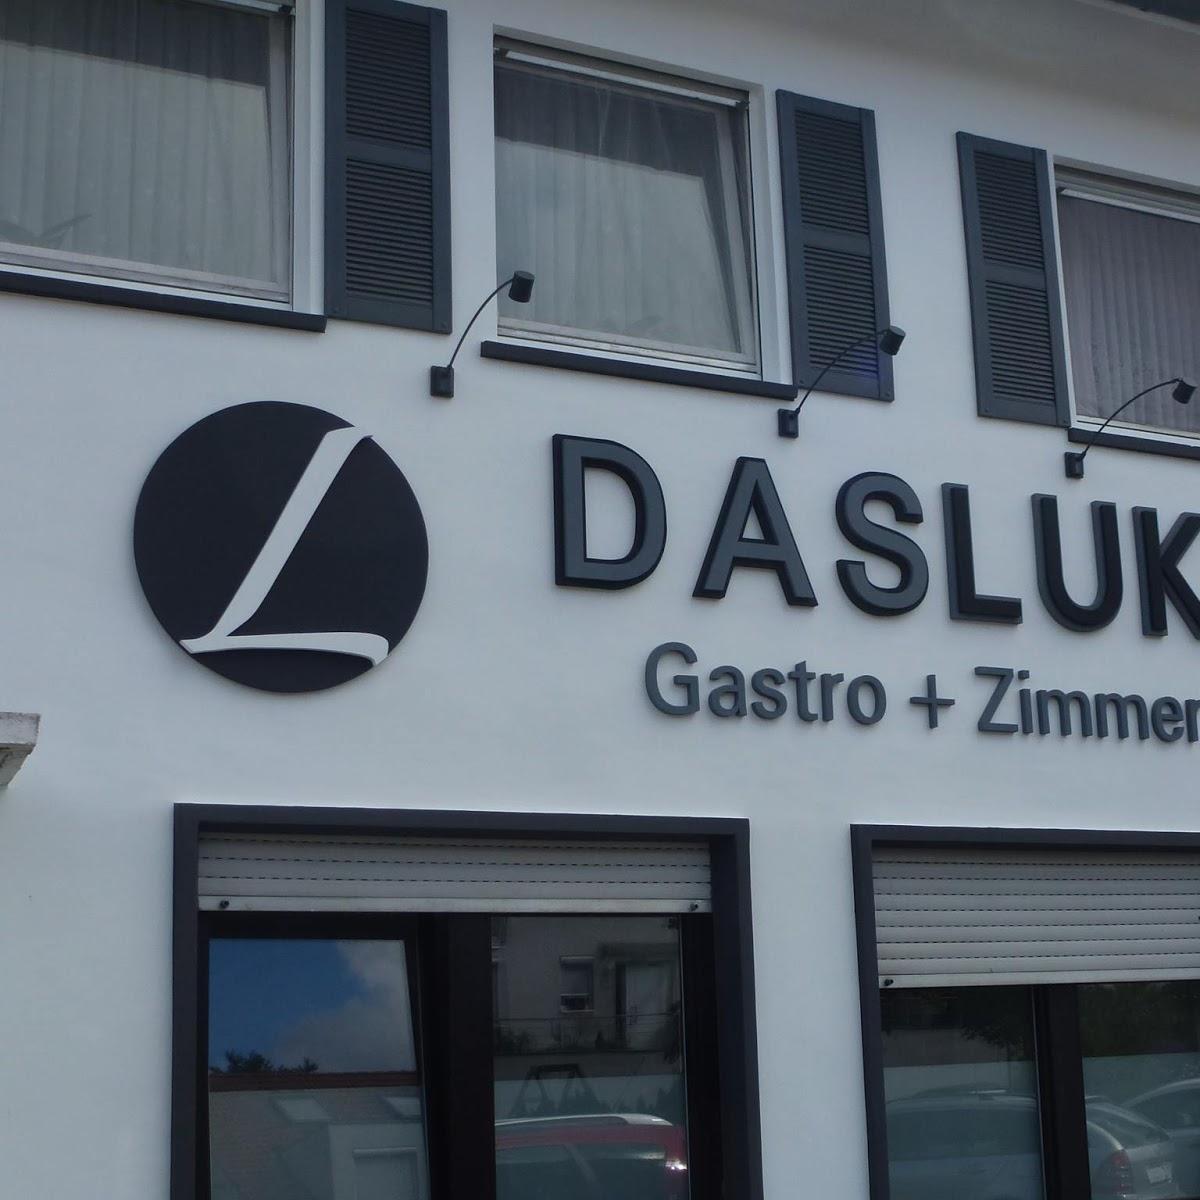 Restaurant "DASLUKI" in Köngen